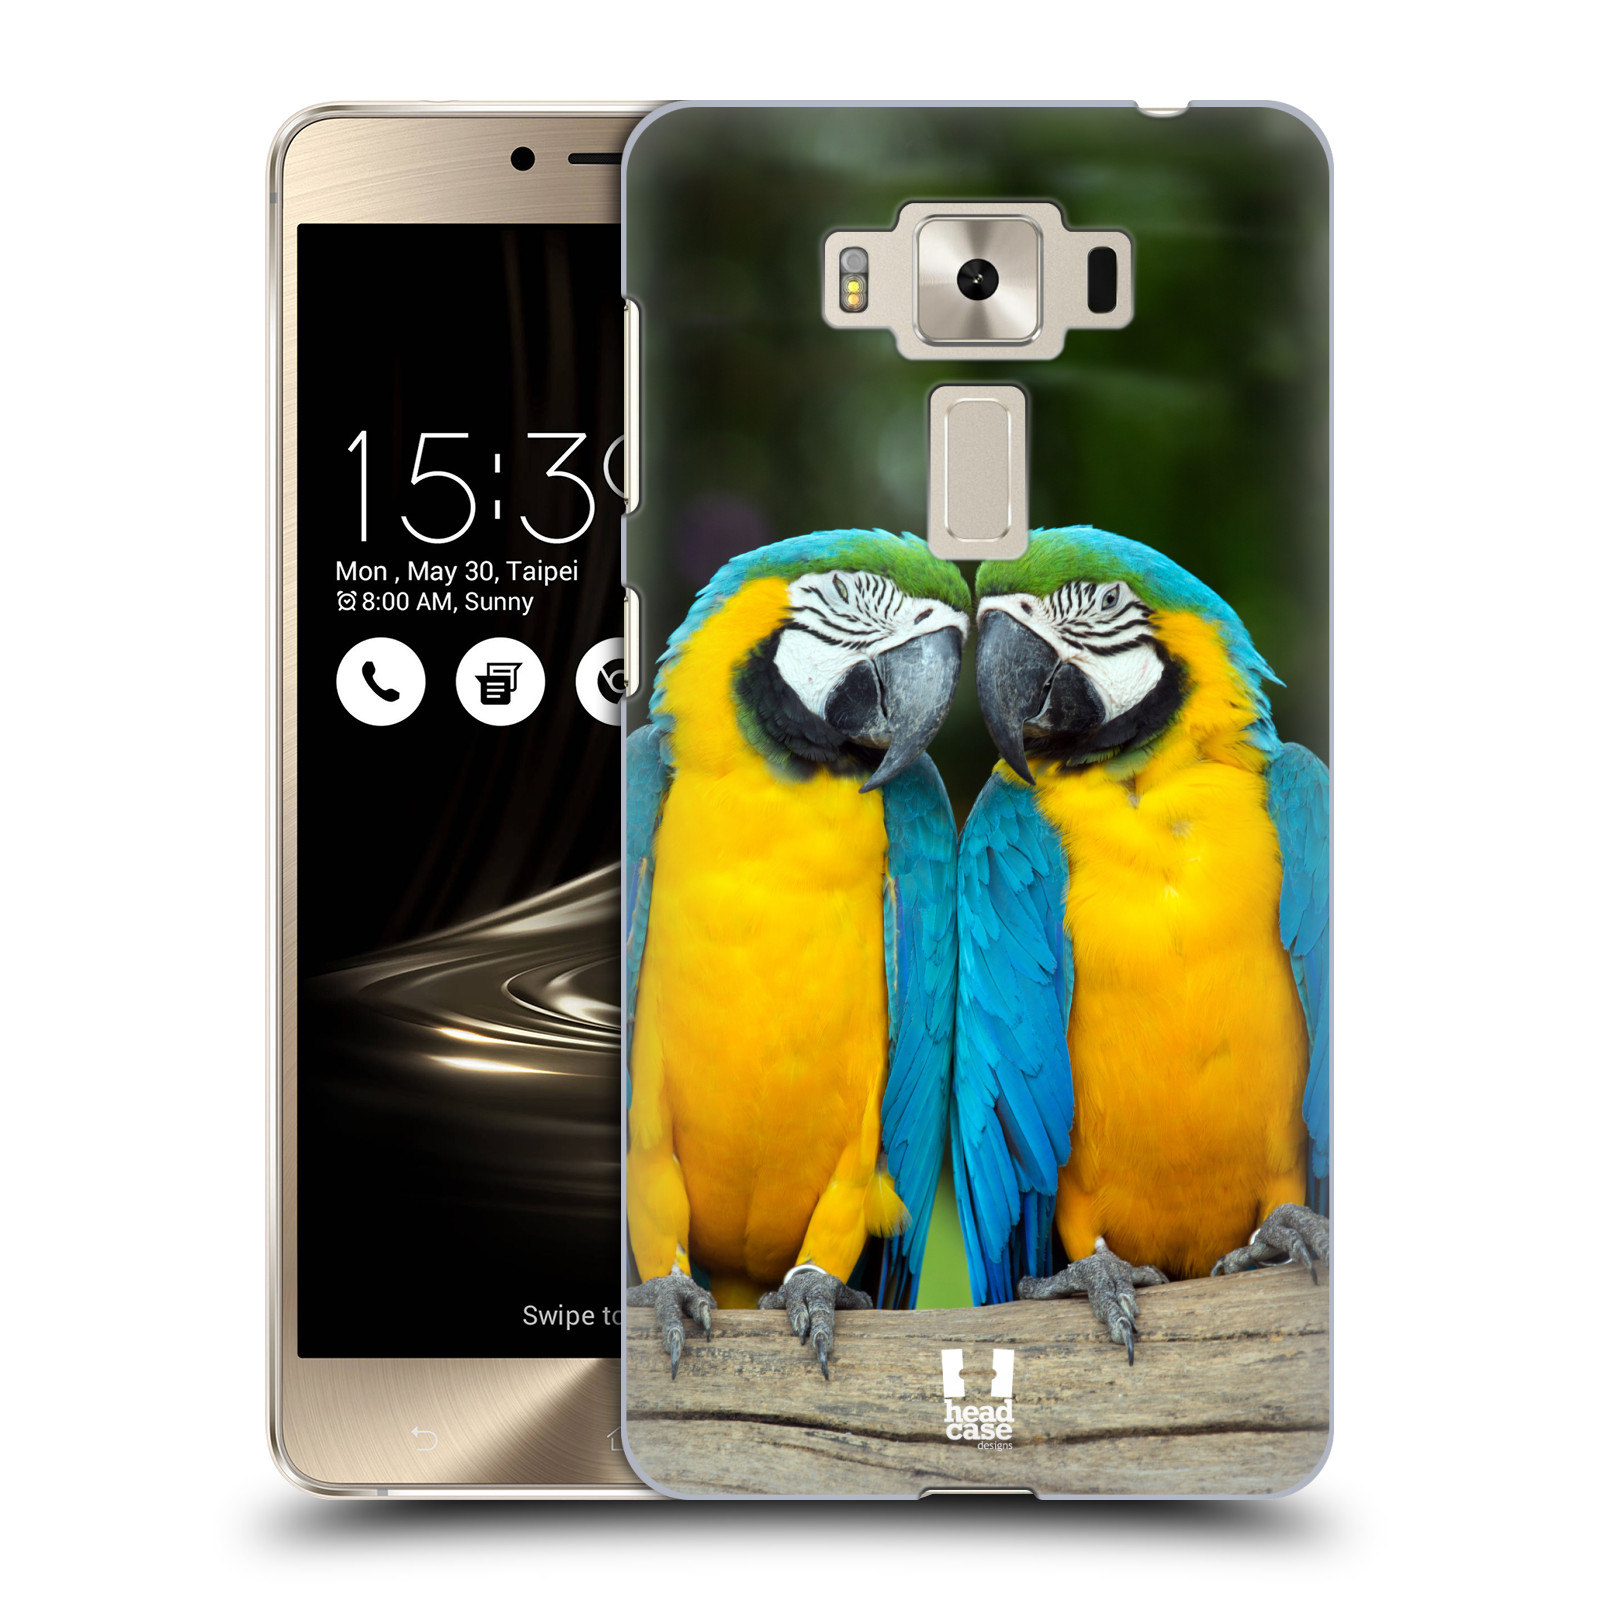 HEAD CASE plastový obal na mobil Asus Zenfone 3 DELUXE ZS550KL vzor slavná zvířata foto dva papoušci